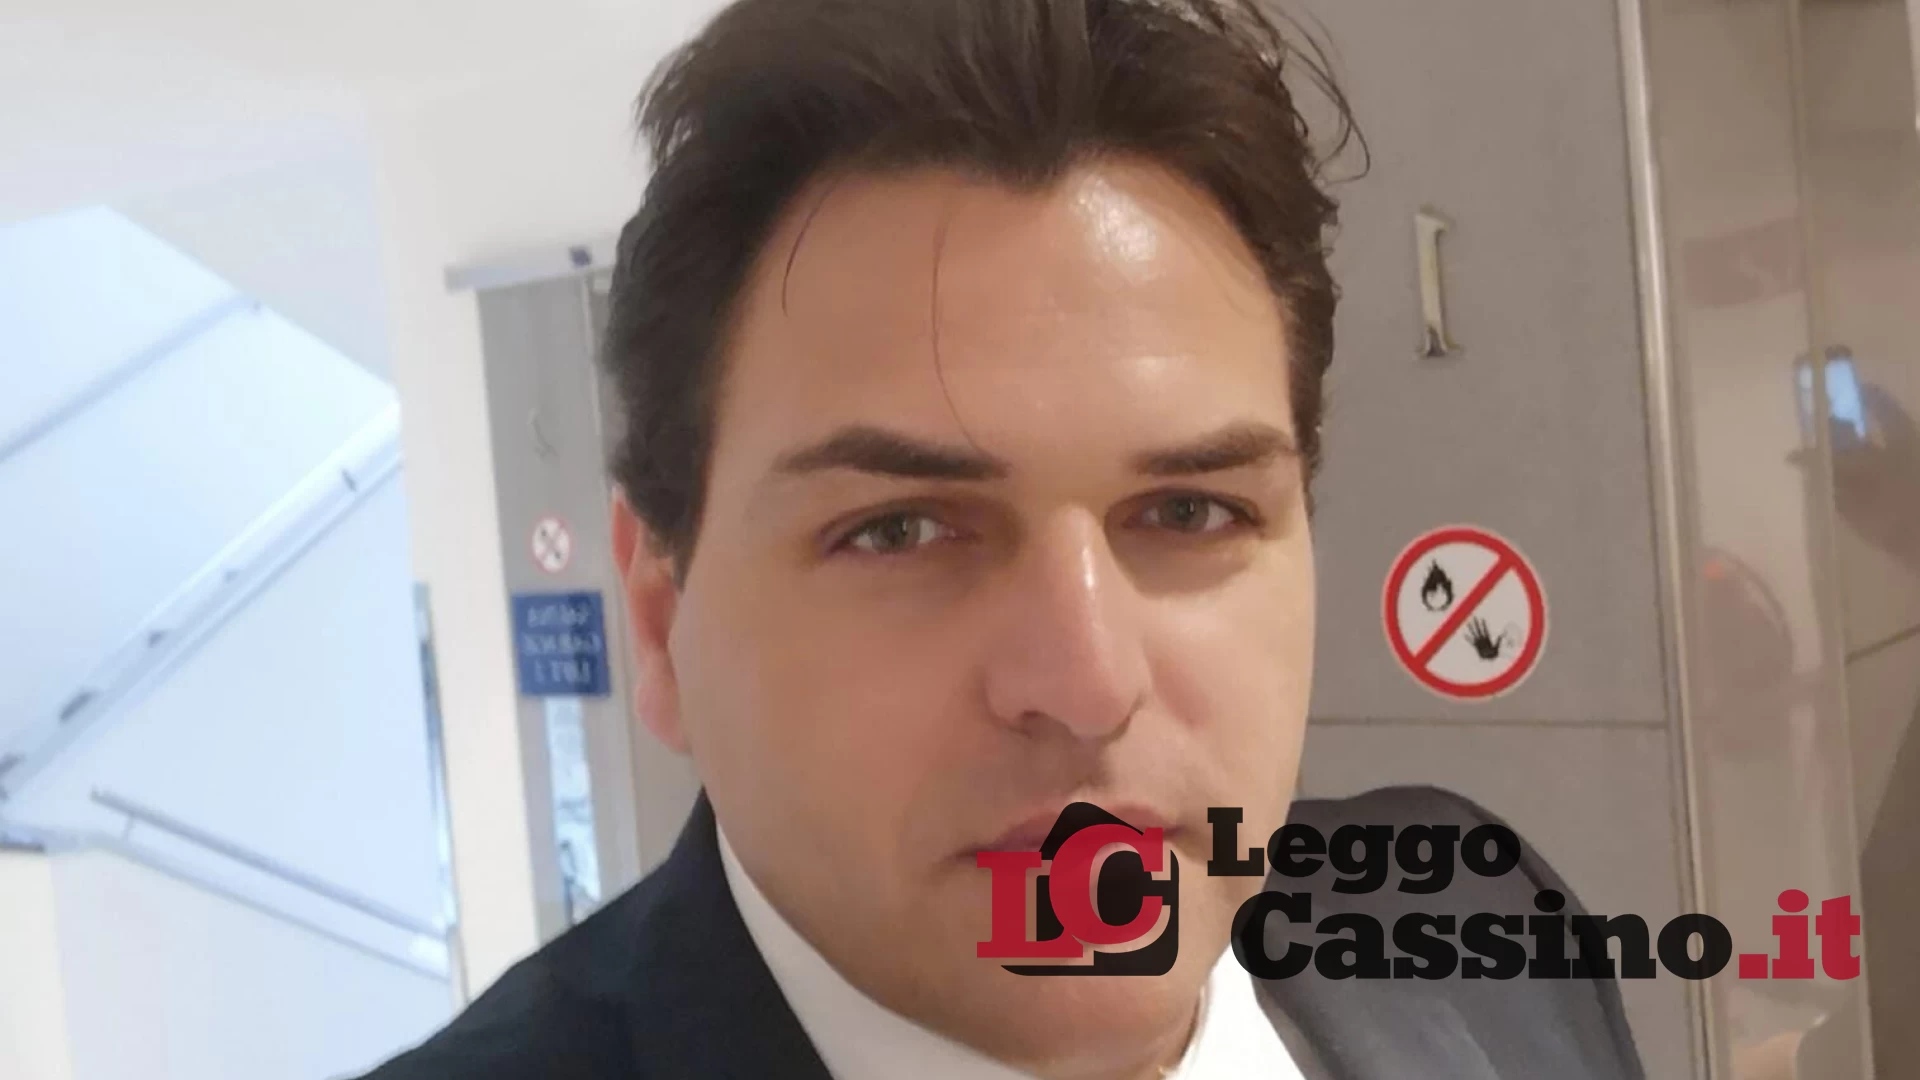 "Sono iniziati i lavori ingannando i cittadini": ancora polemiche a Cassino